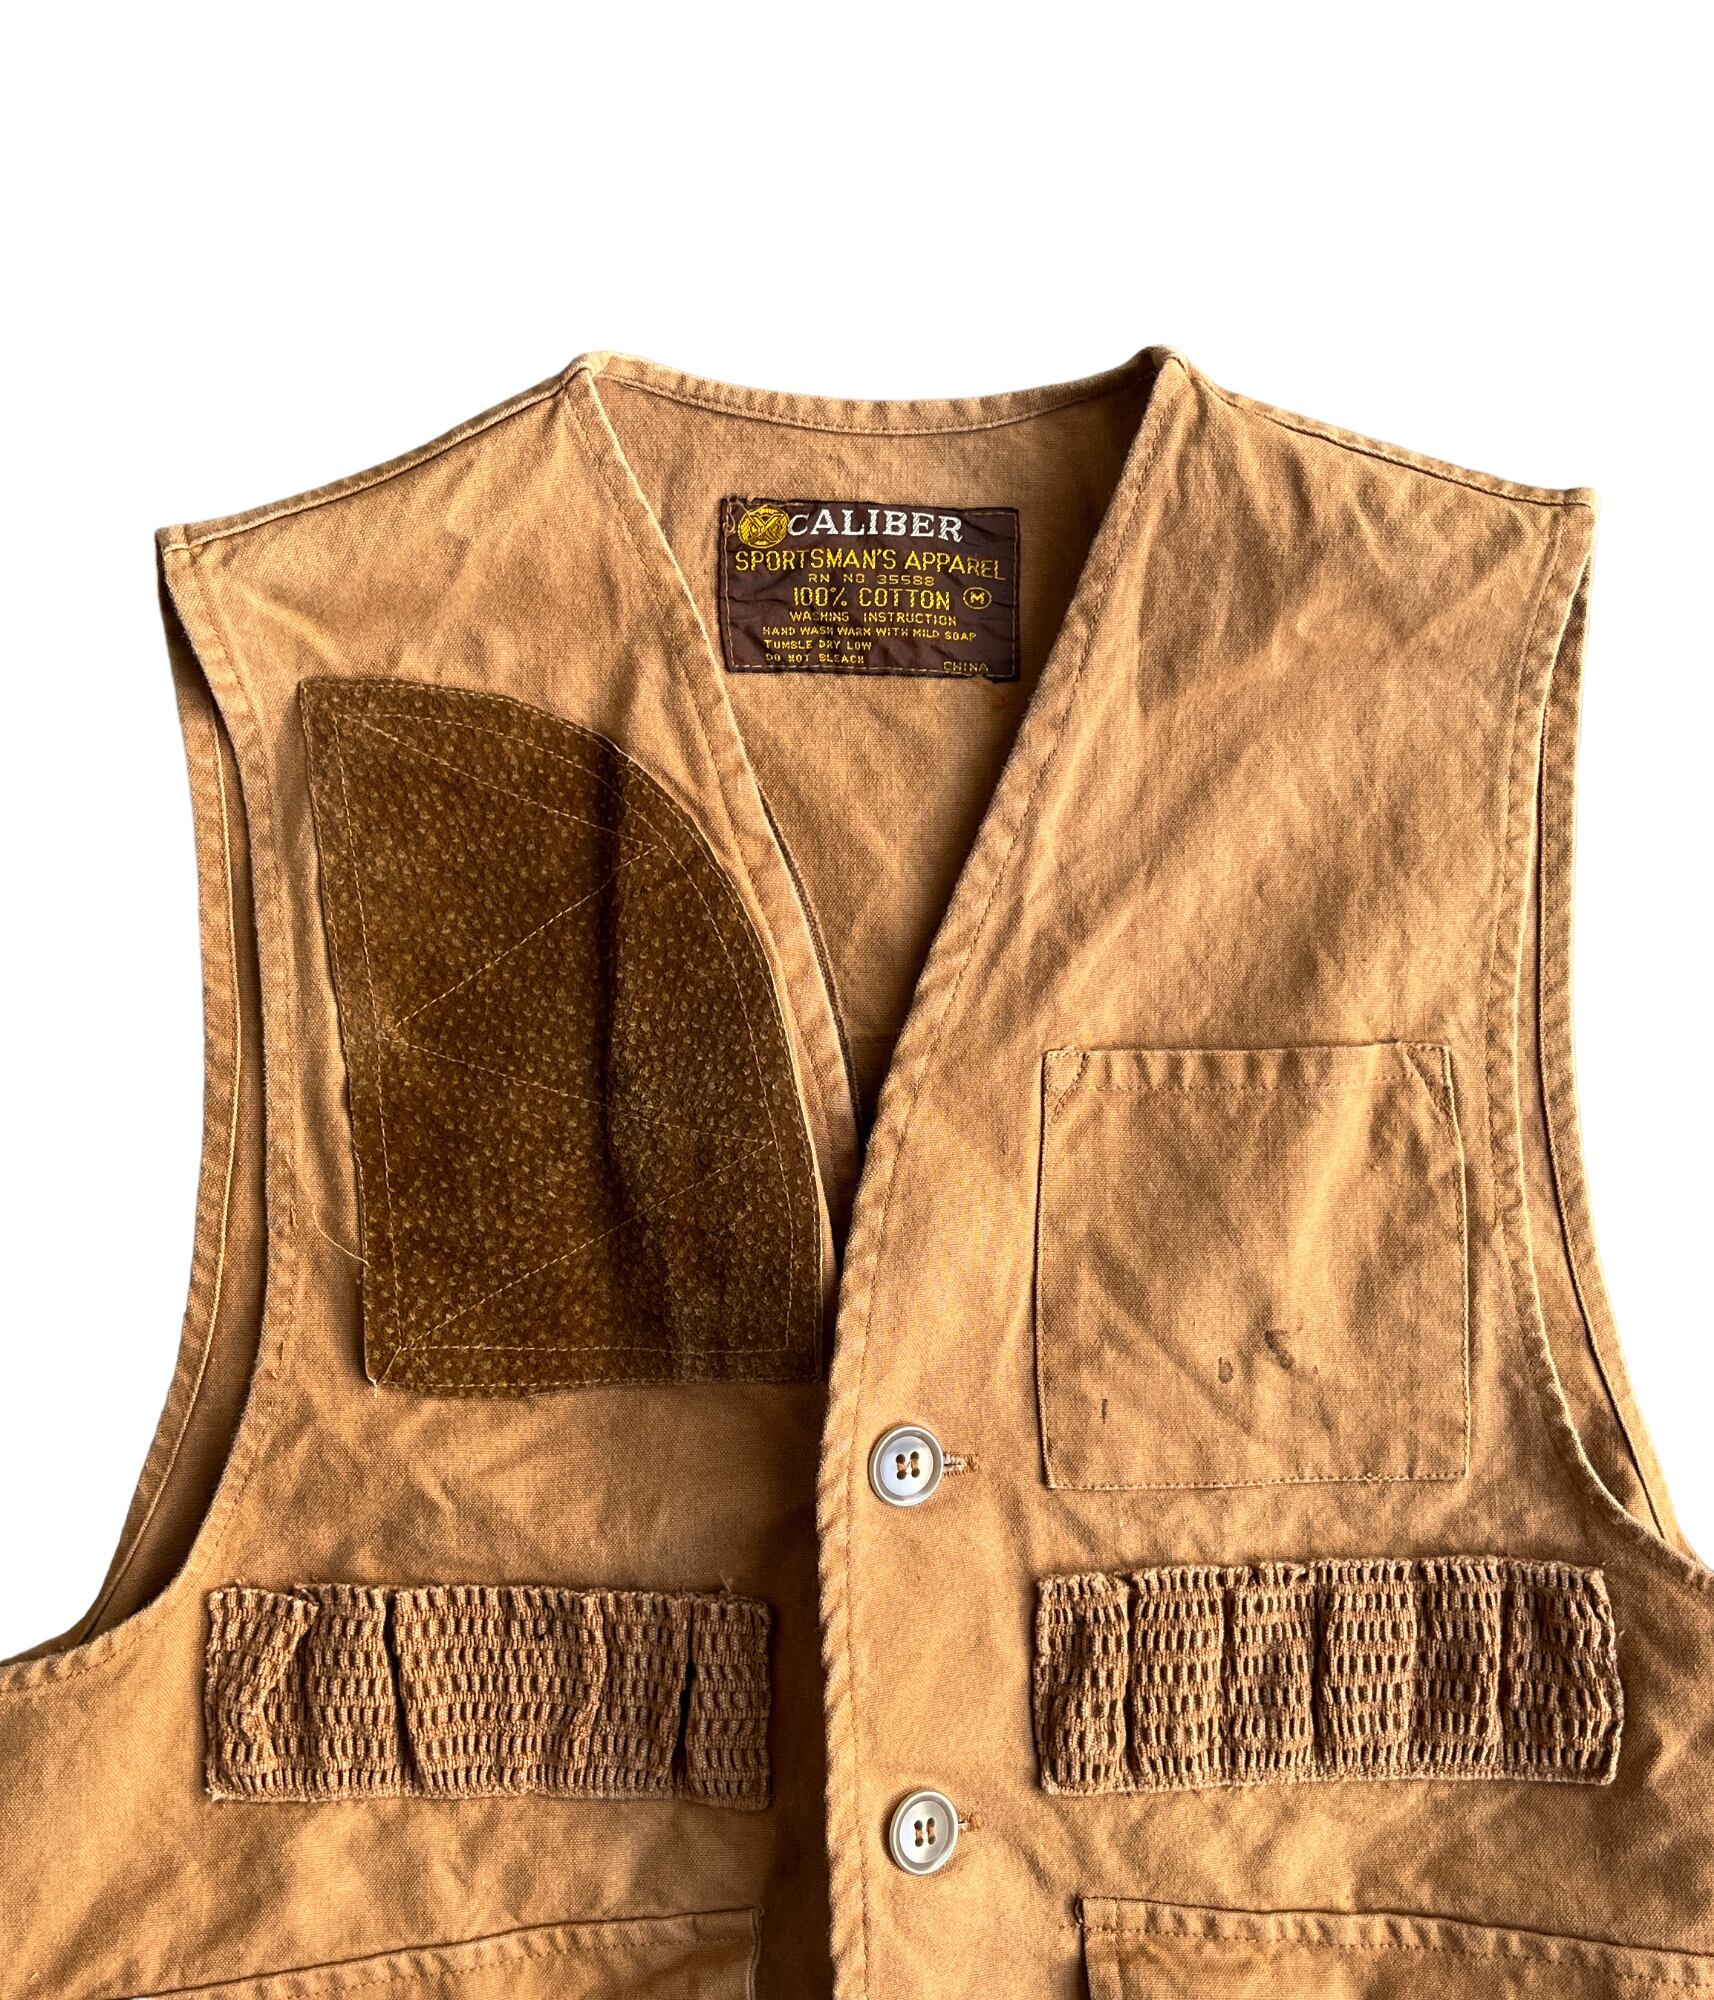 Vintage Hunting vest